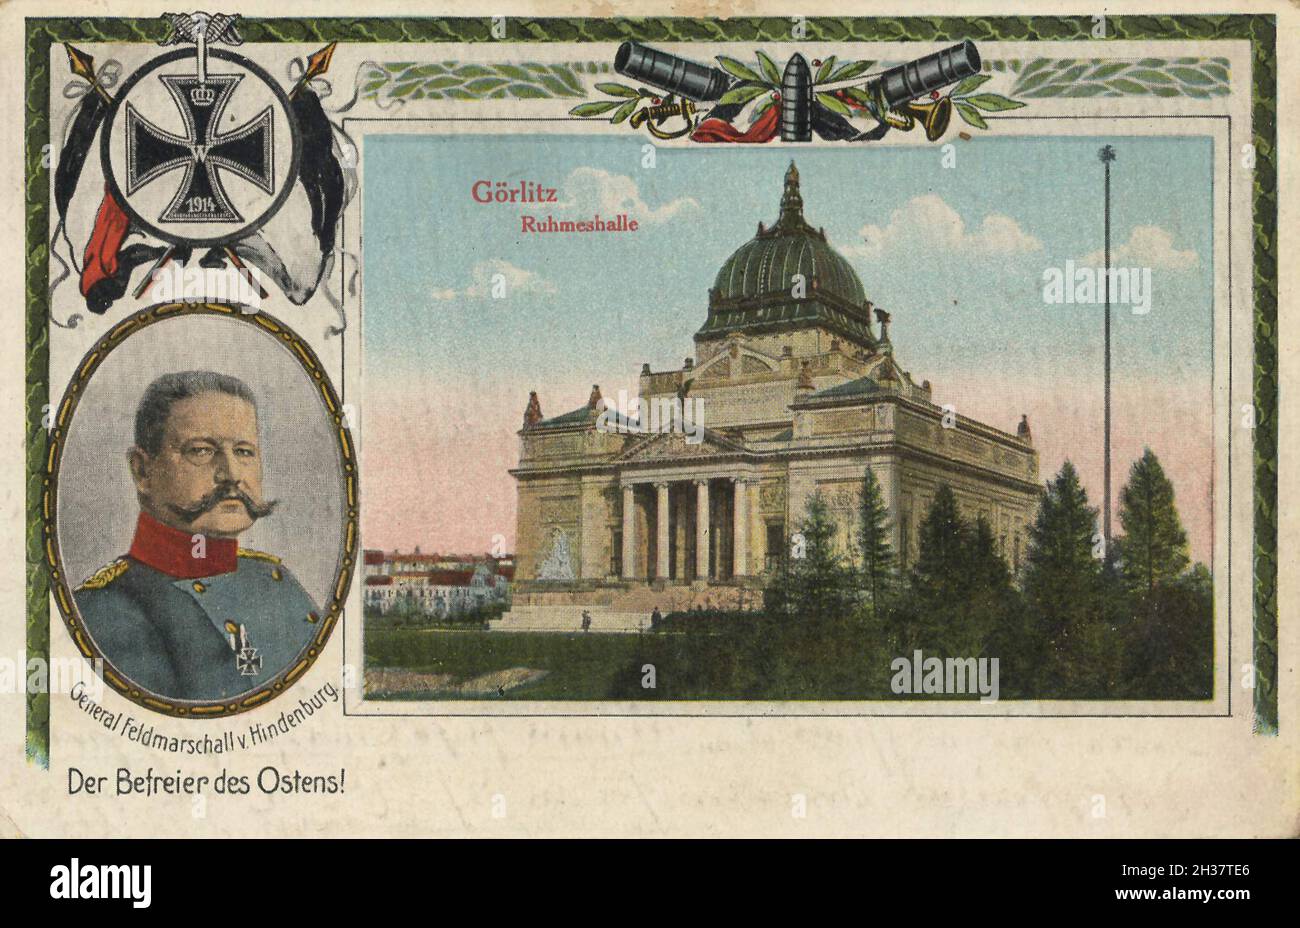 Erbringung von Görlitz, Ausführung von Unterhalten, Ausland, Ausland, Ansicht von CA 1910, digitale Reproduktion einer gemeinfreien Postkarte Banque D'Images